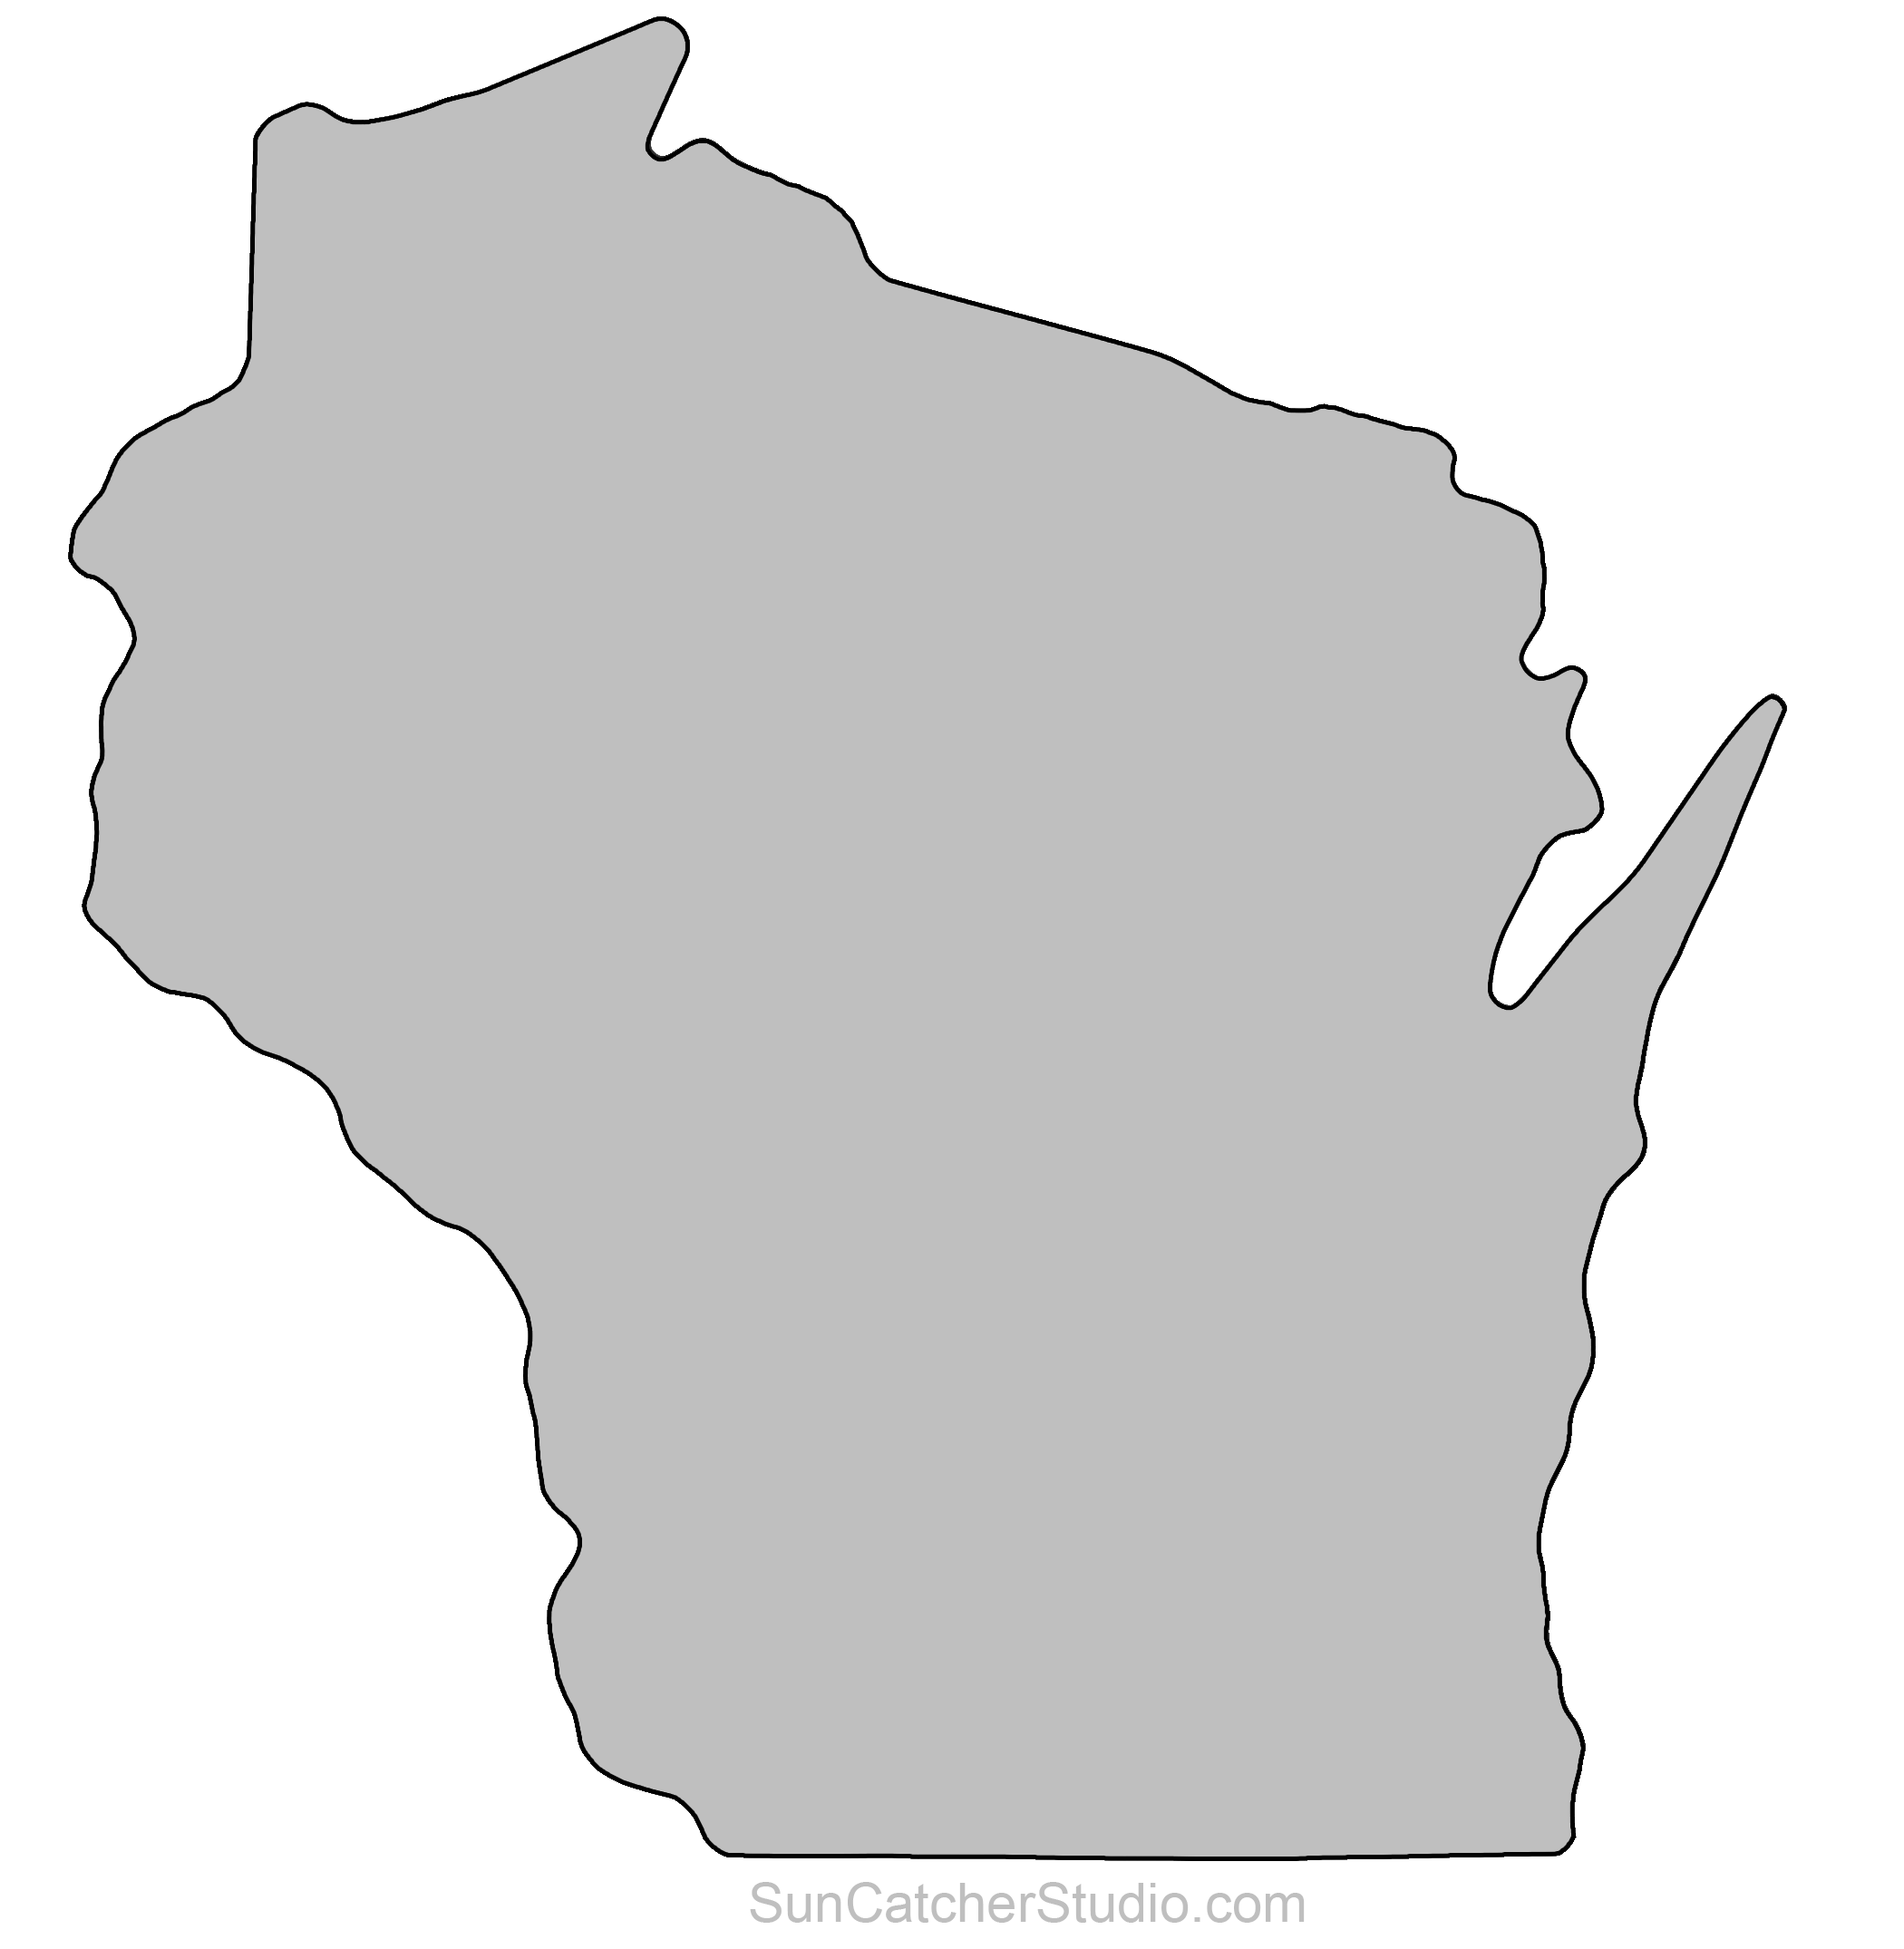 Michigan pattern